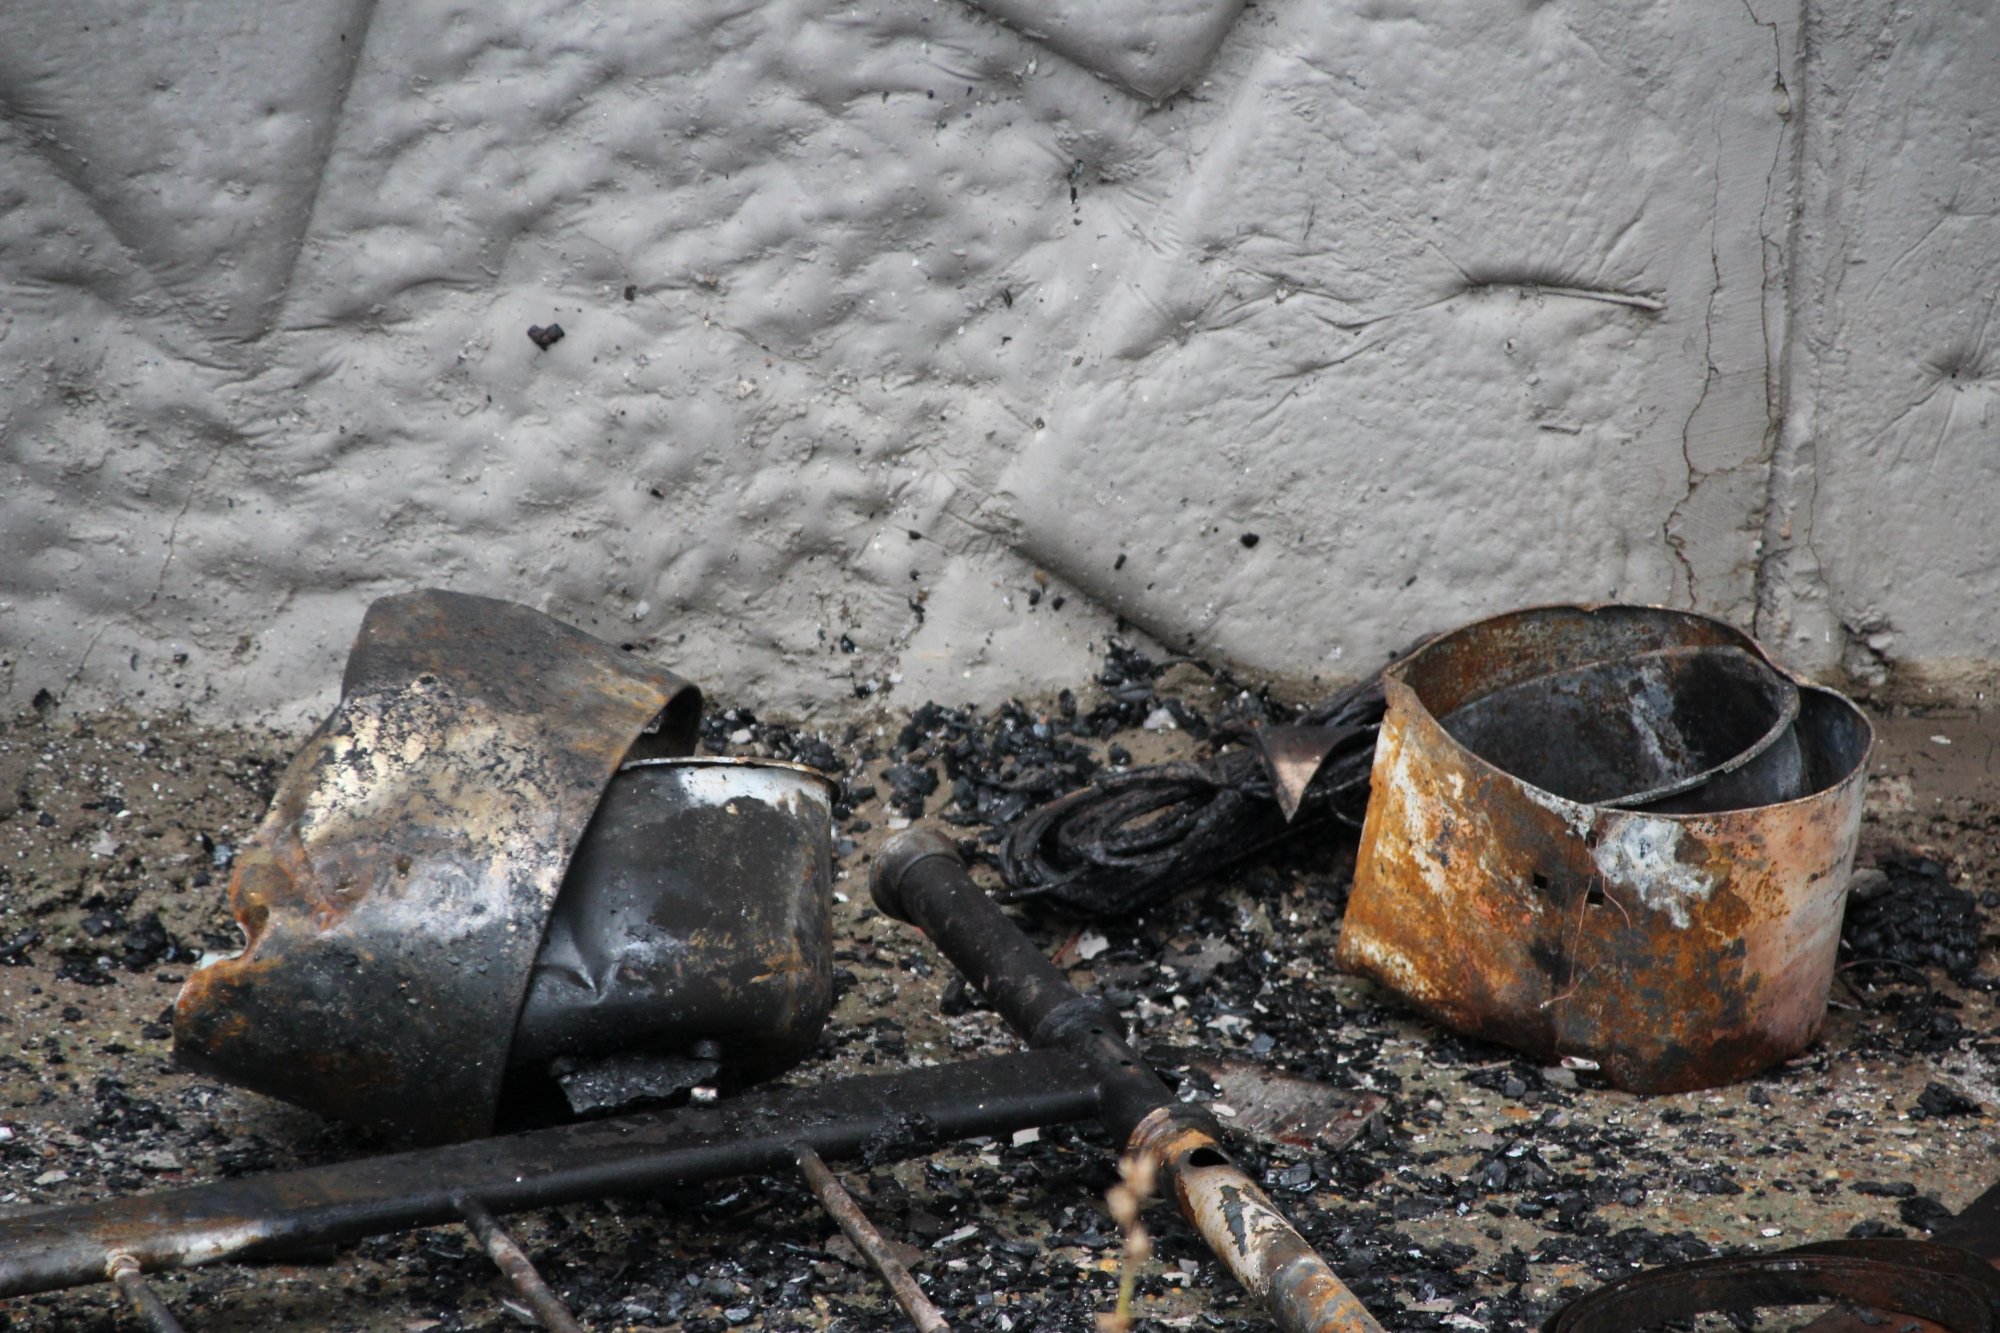 В Челнах сгорела «студенческая» квартира (фото)